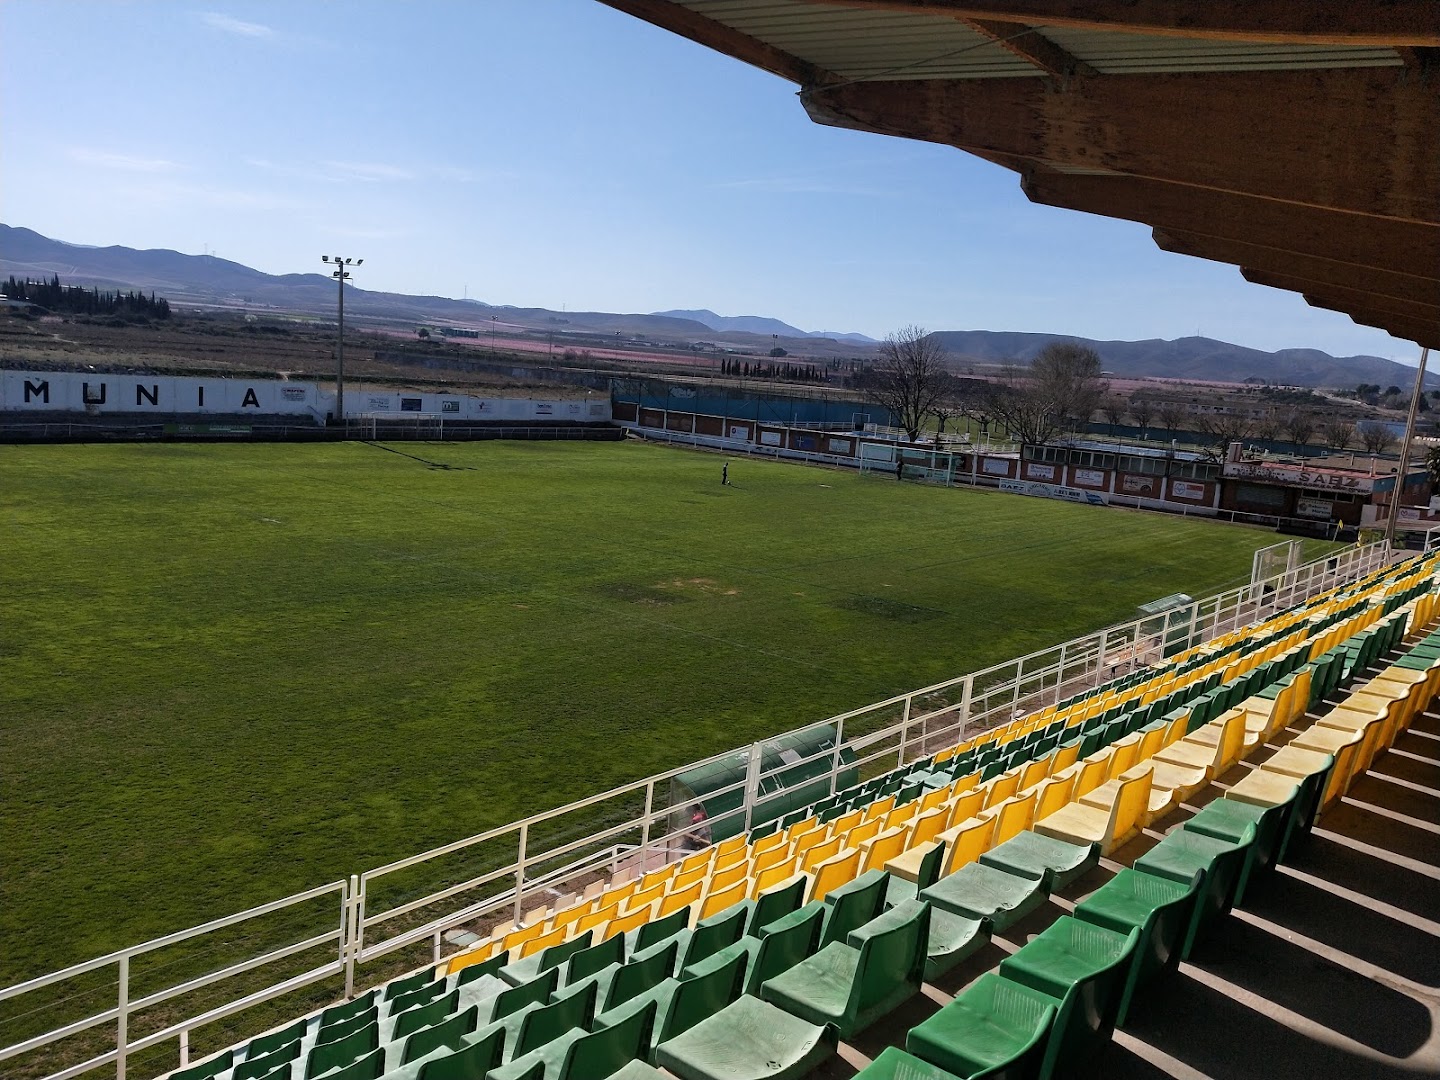 Campo Municipal de Fútbol de Tenerías